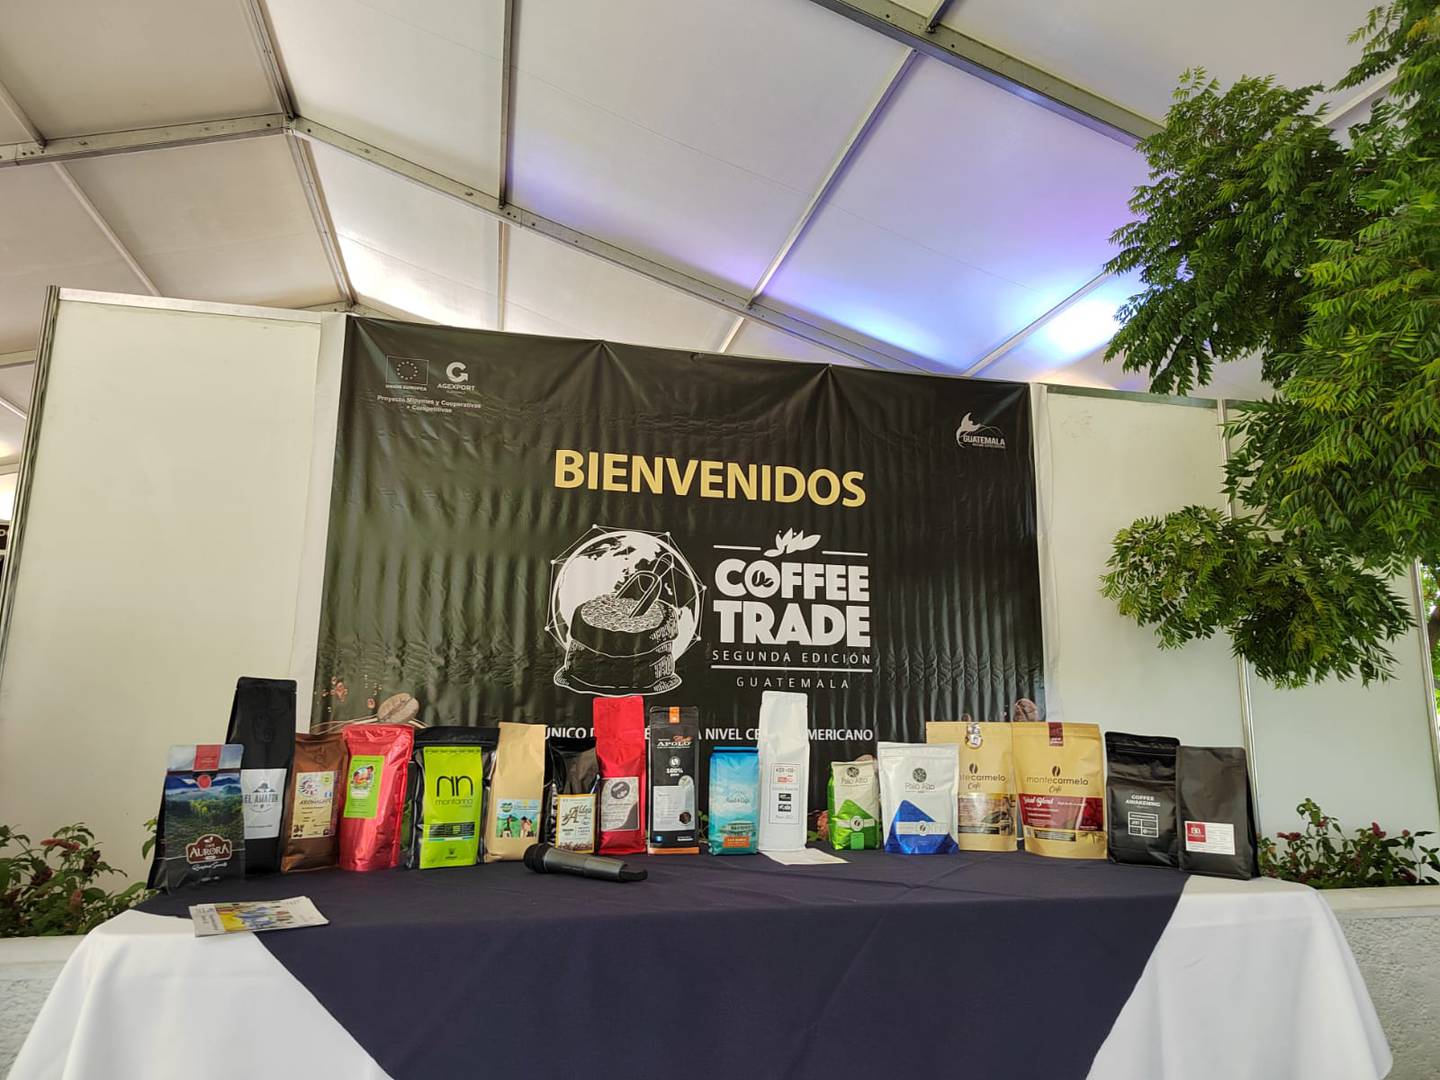 guatemaltecos se presentaron en la segunda edición de Coffee Trade durante el evento Agritrade organizado por Agexport.dfd